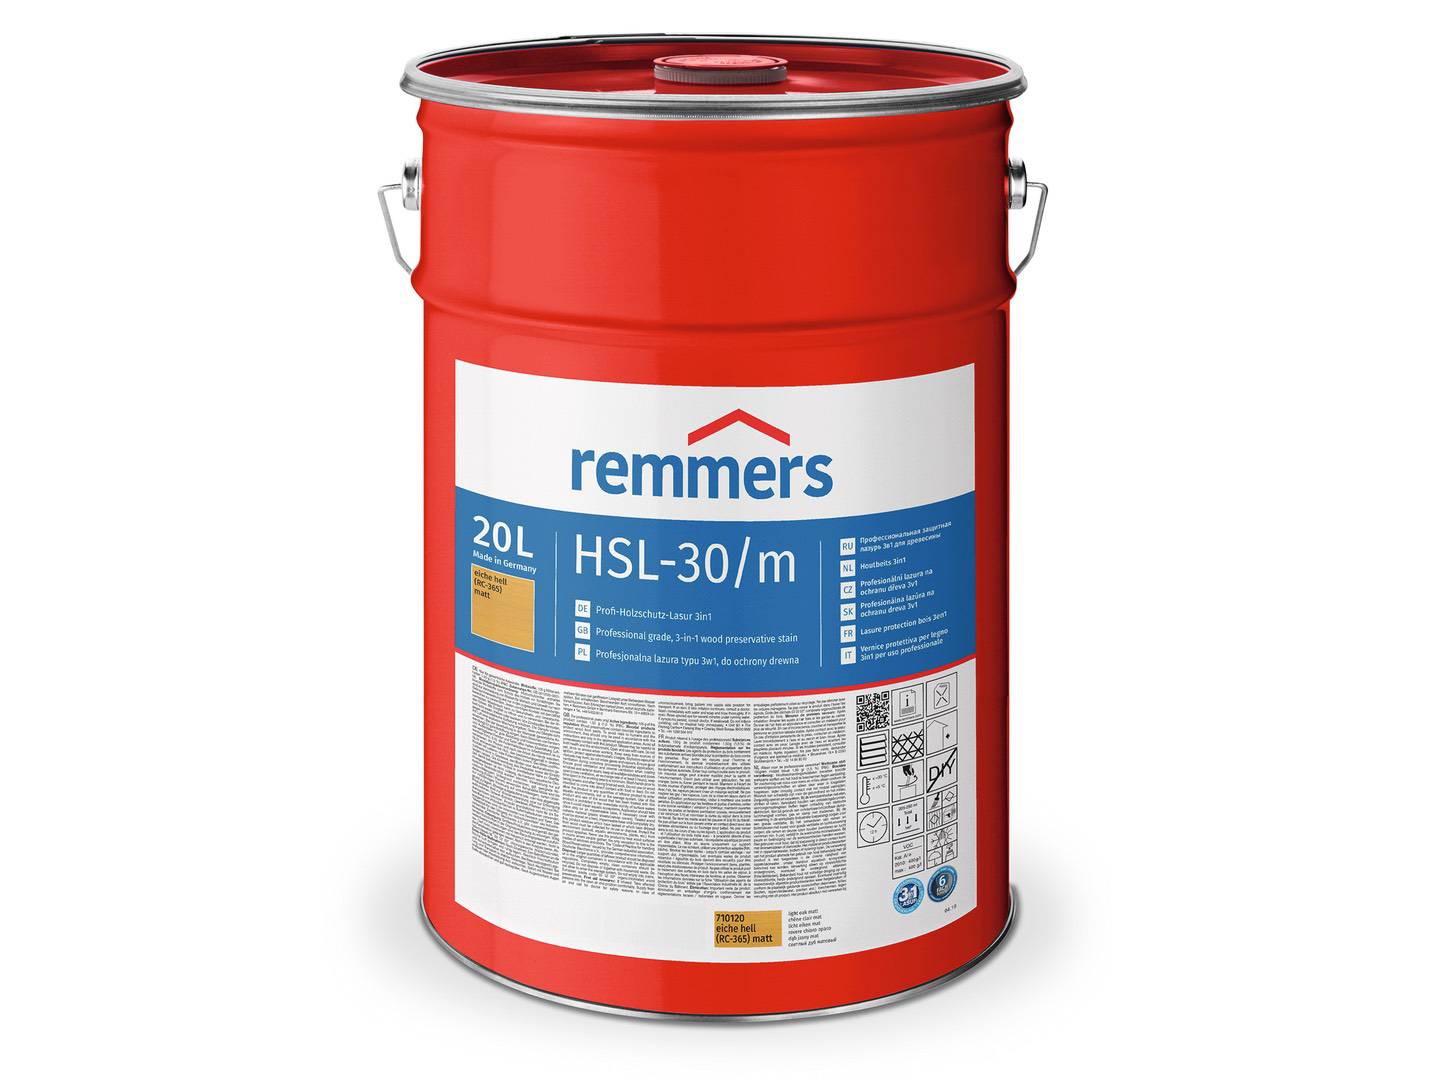 REMMERS HSL-30/m-Profi-Holzschutz-Lasur 3in1 silbergrau (RC-970) matt 20 l